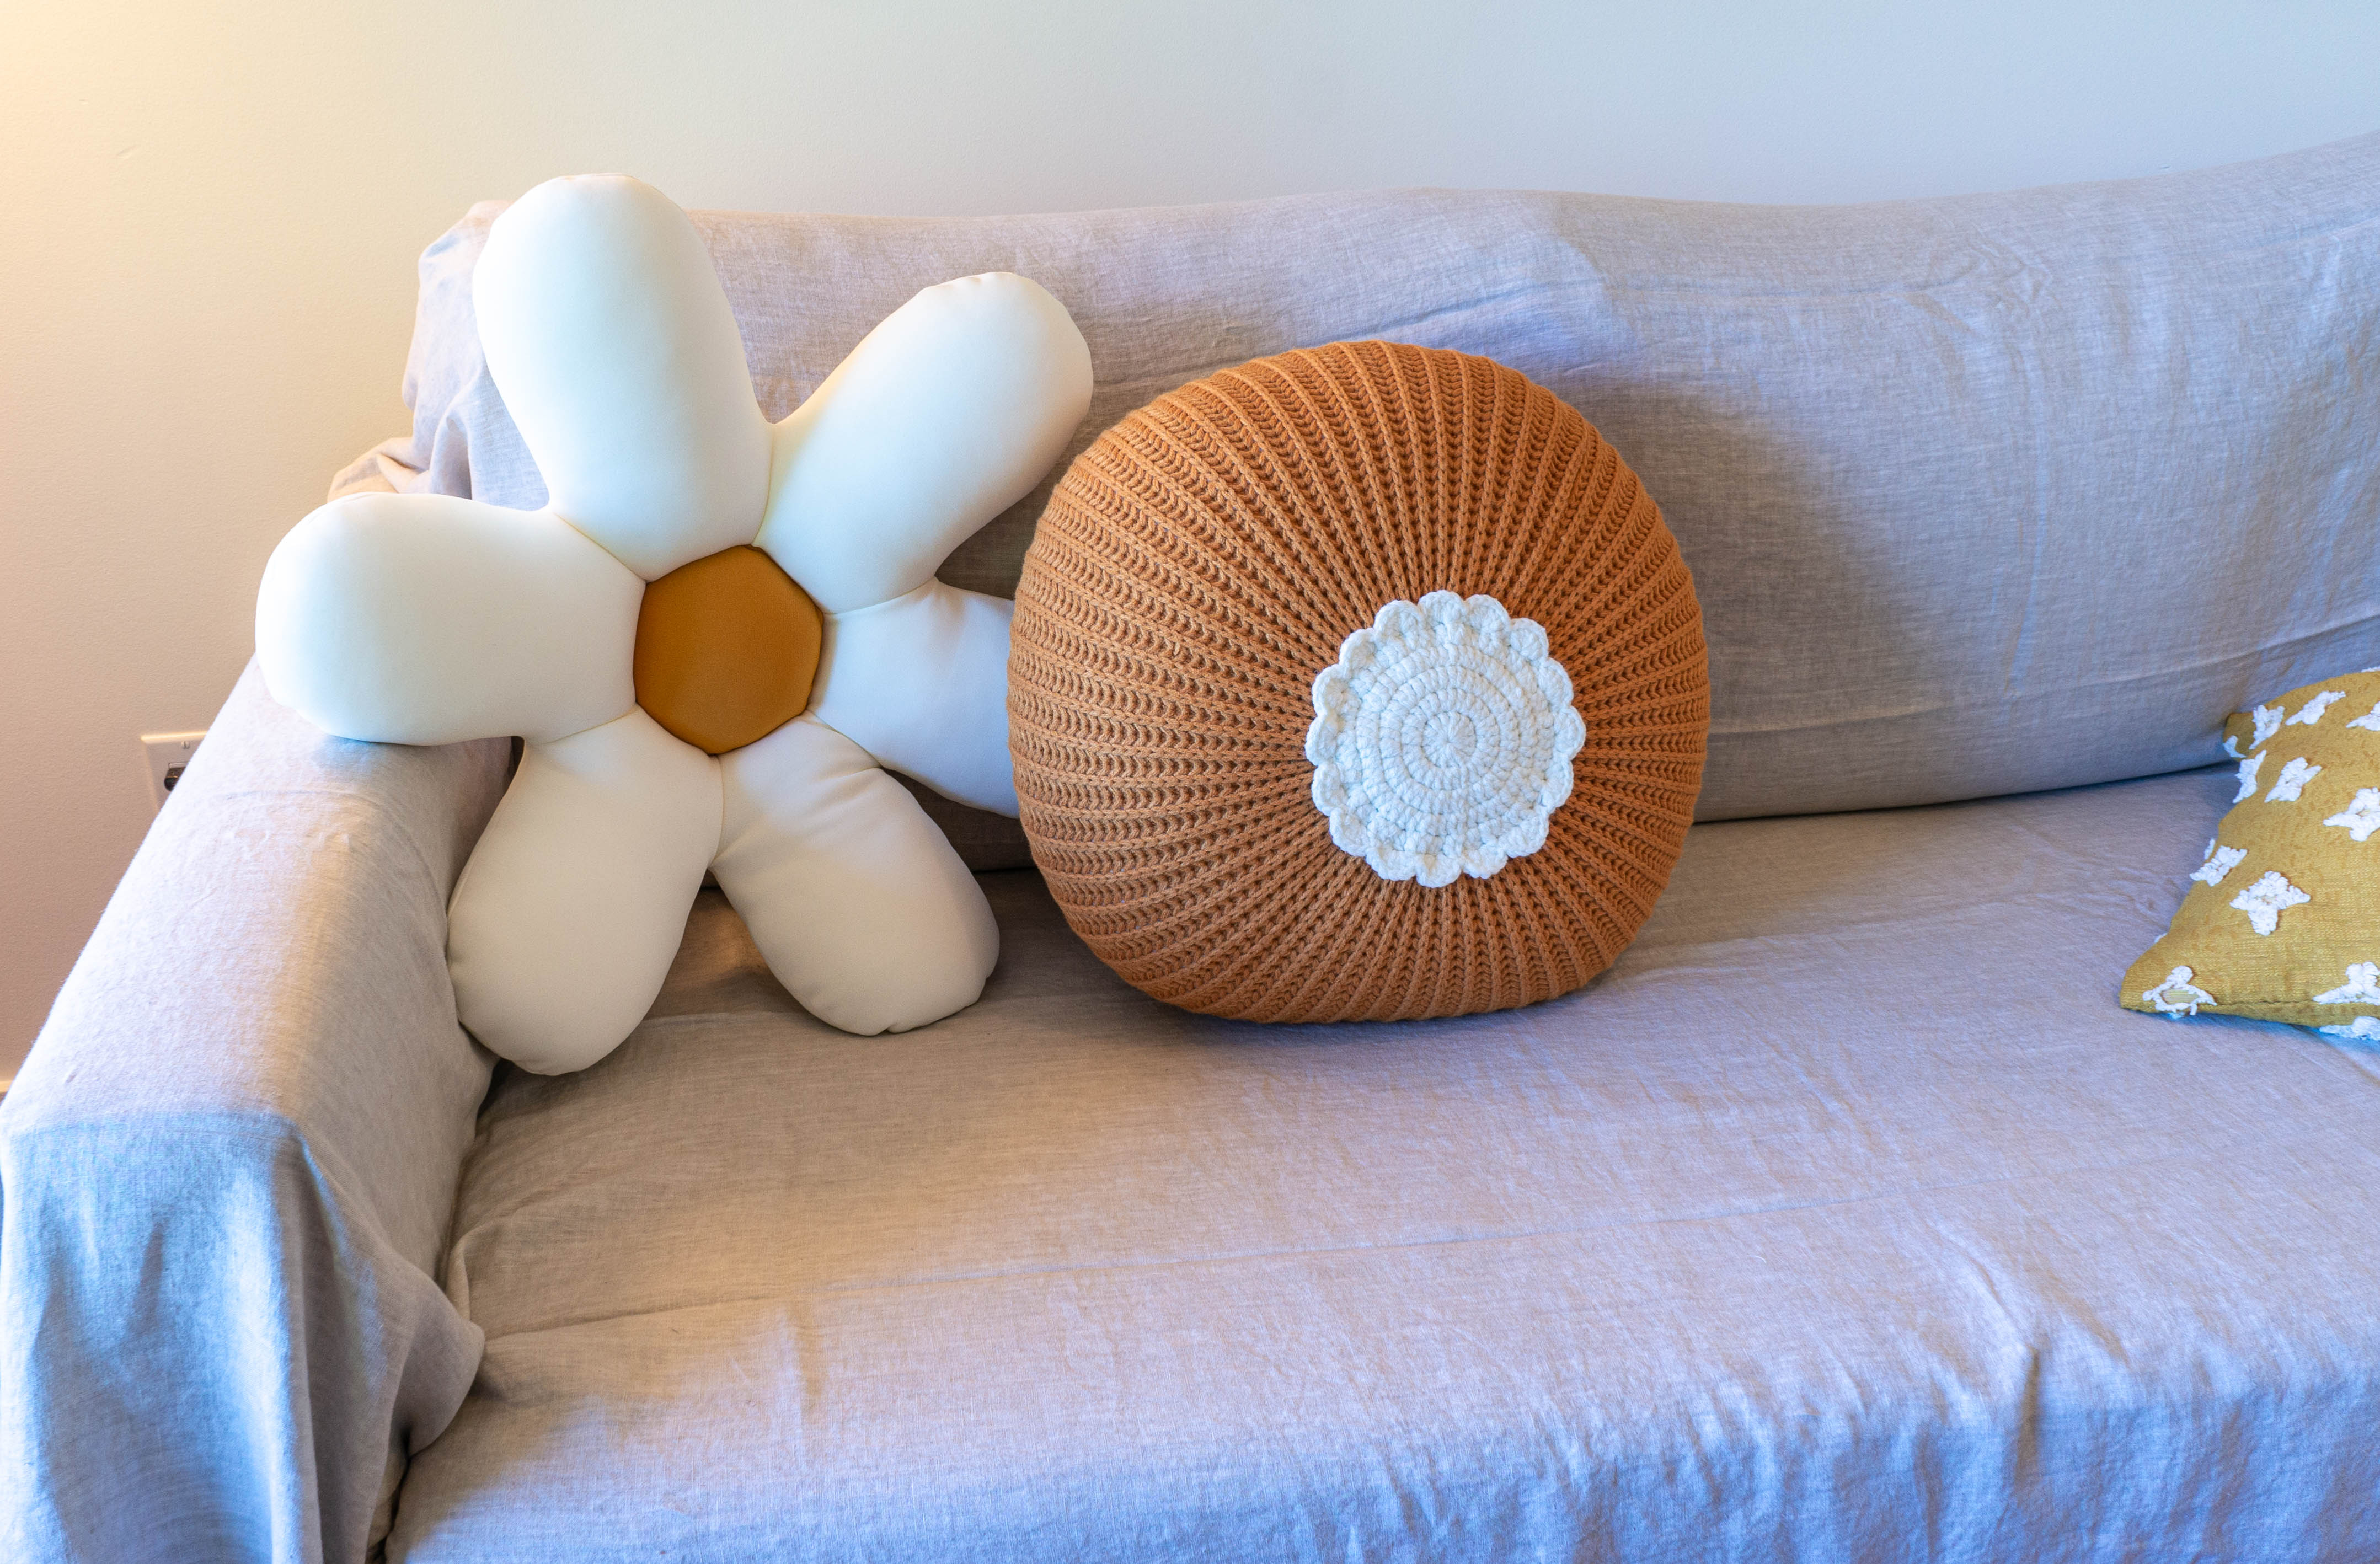 Daisy Flower Throw Pillow/Cushion Cover